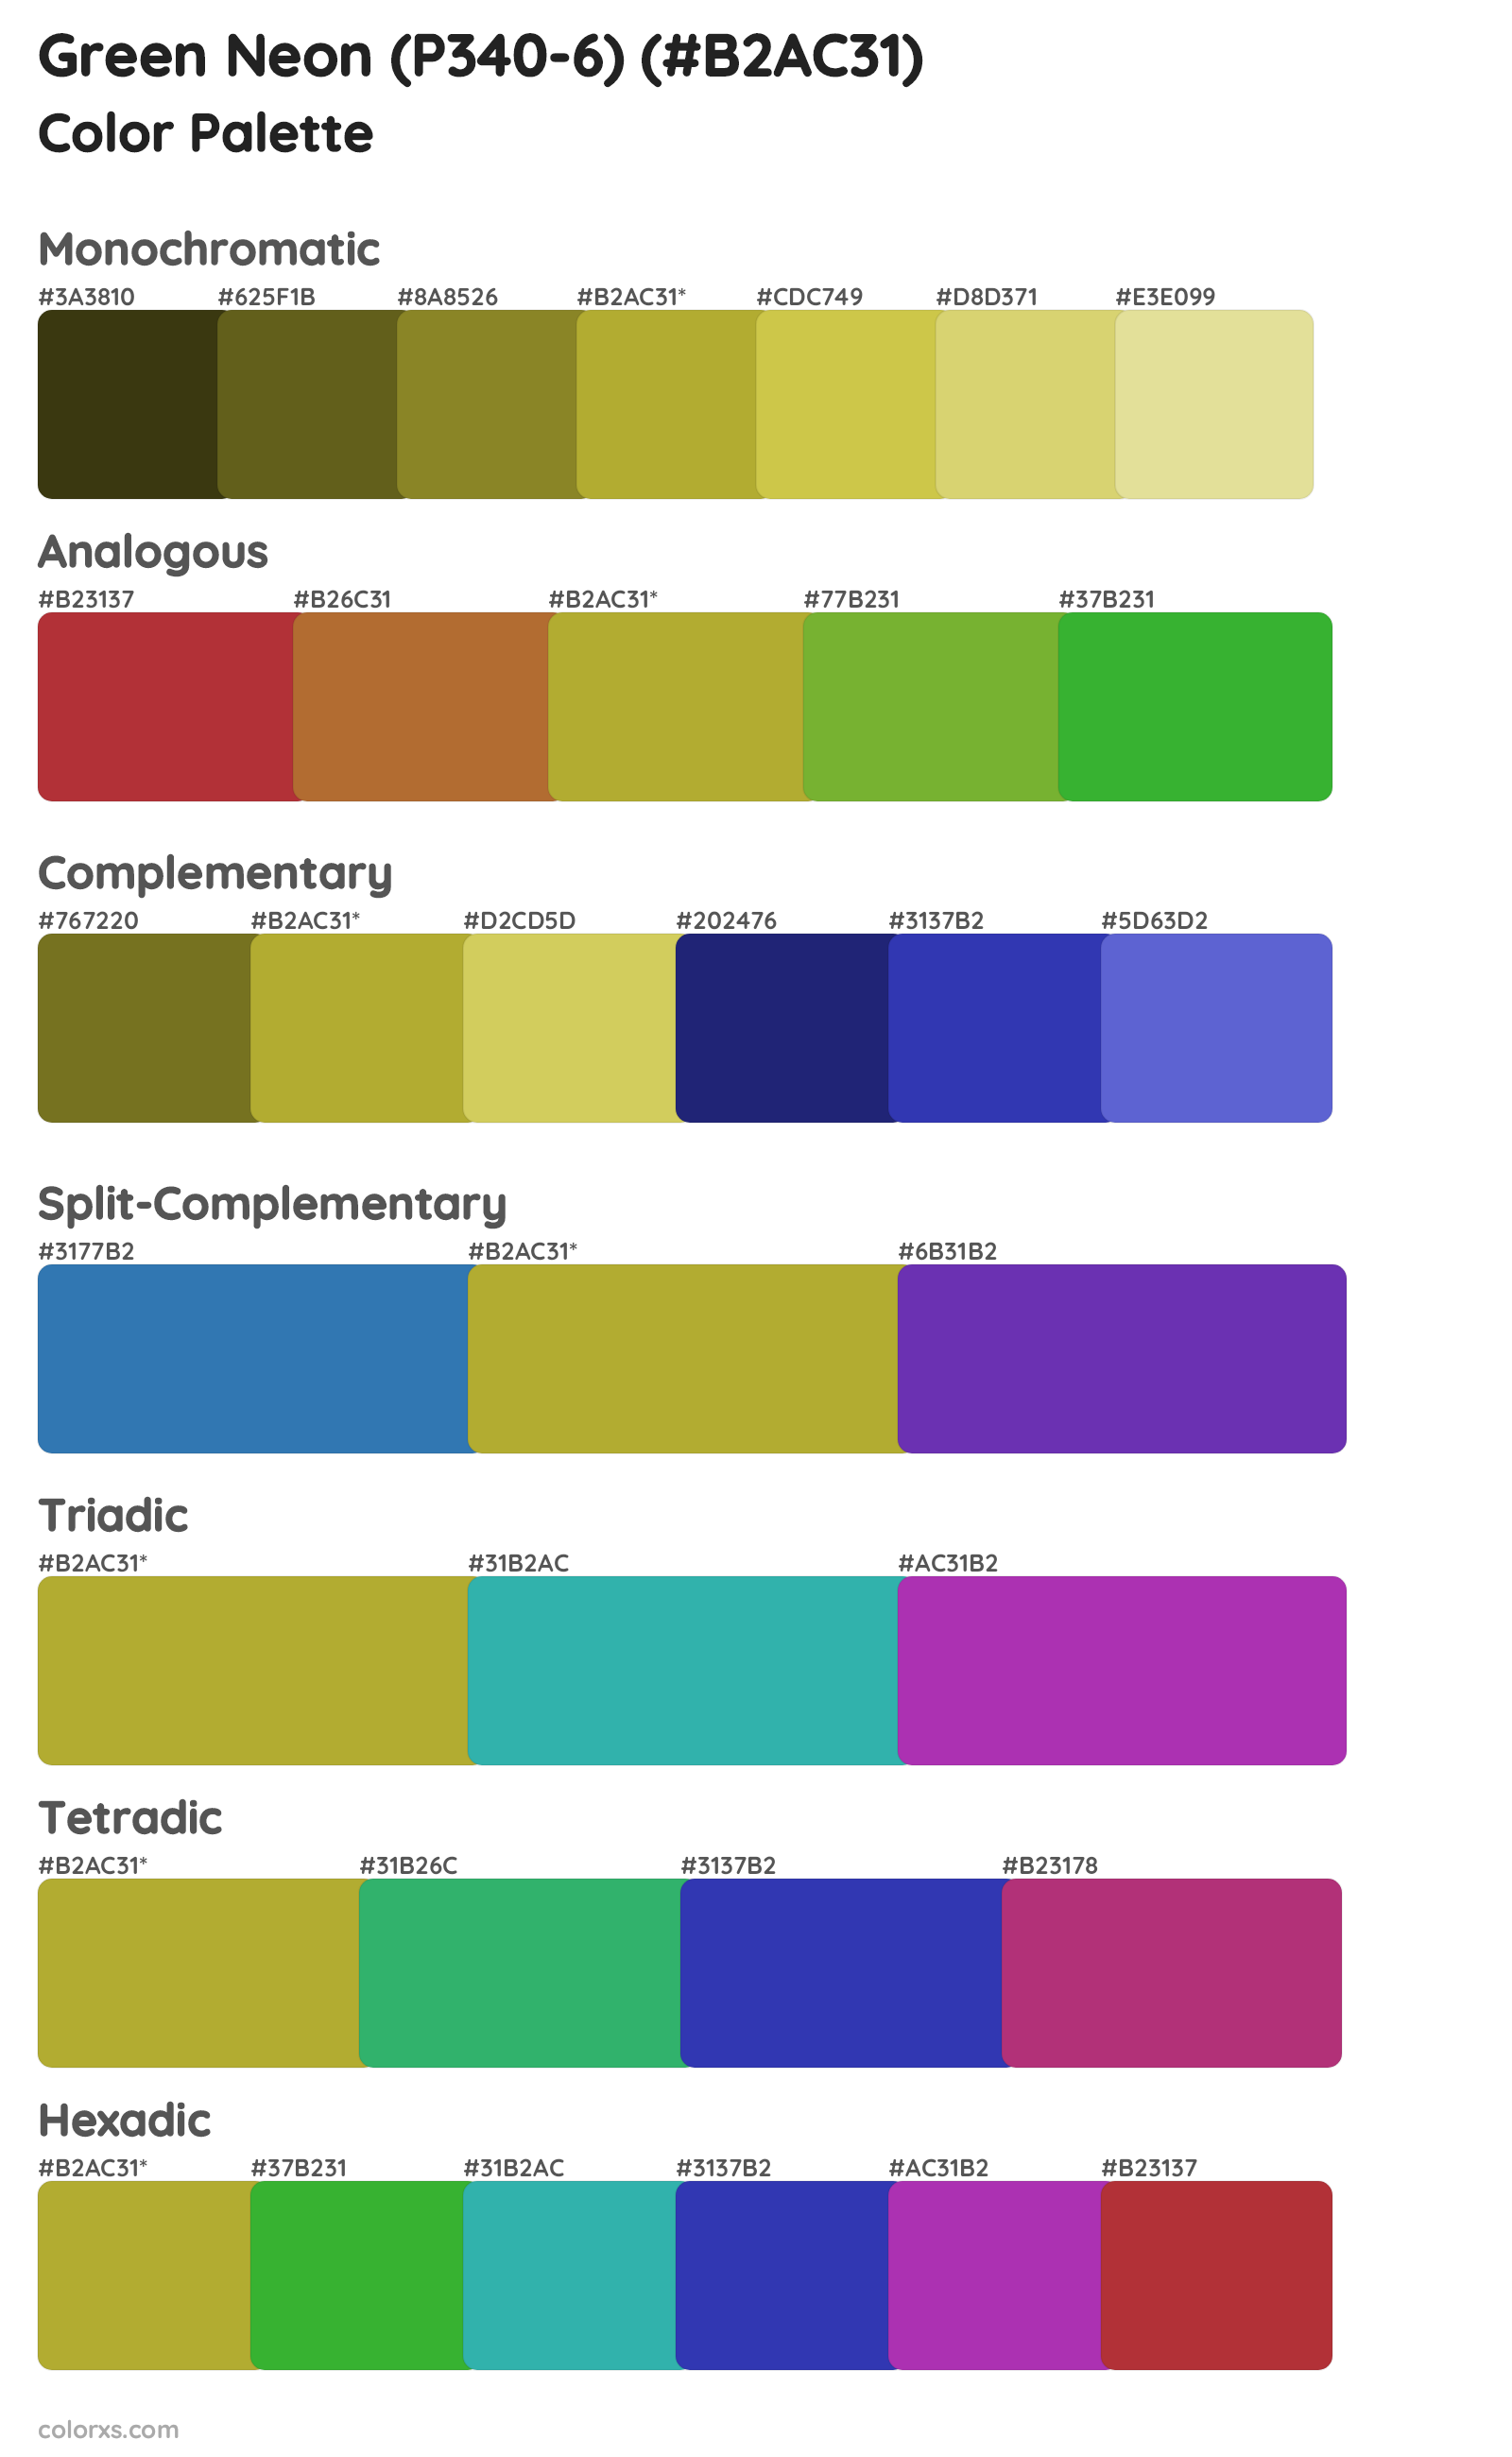 Green Neon (P340-6) Color Scheme Palettes